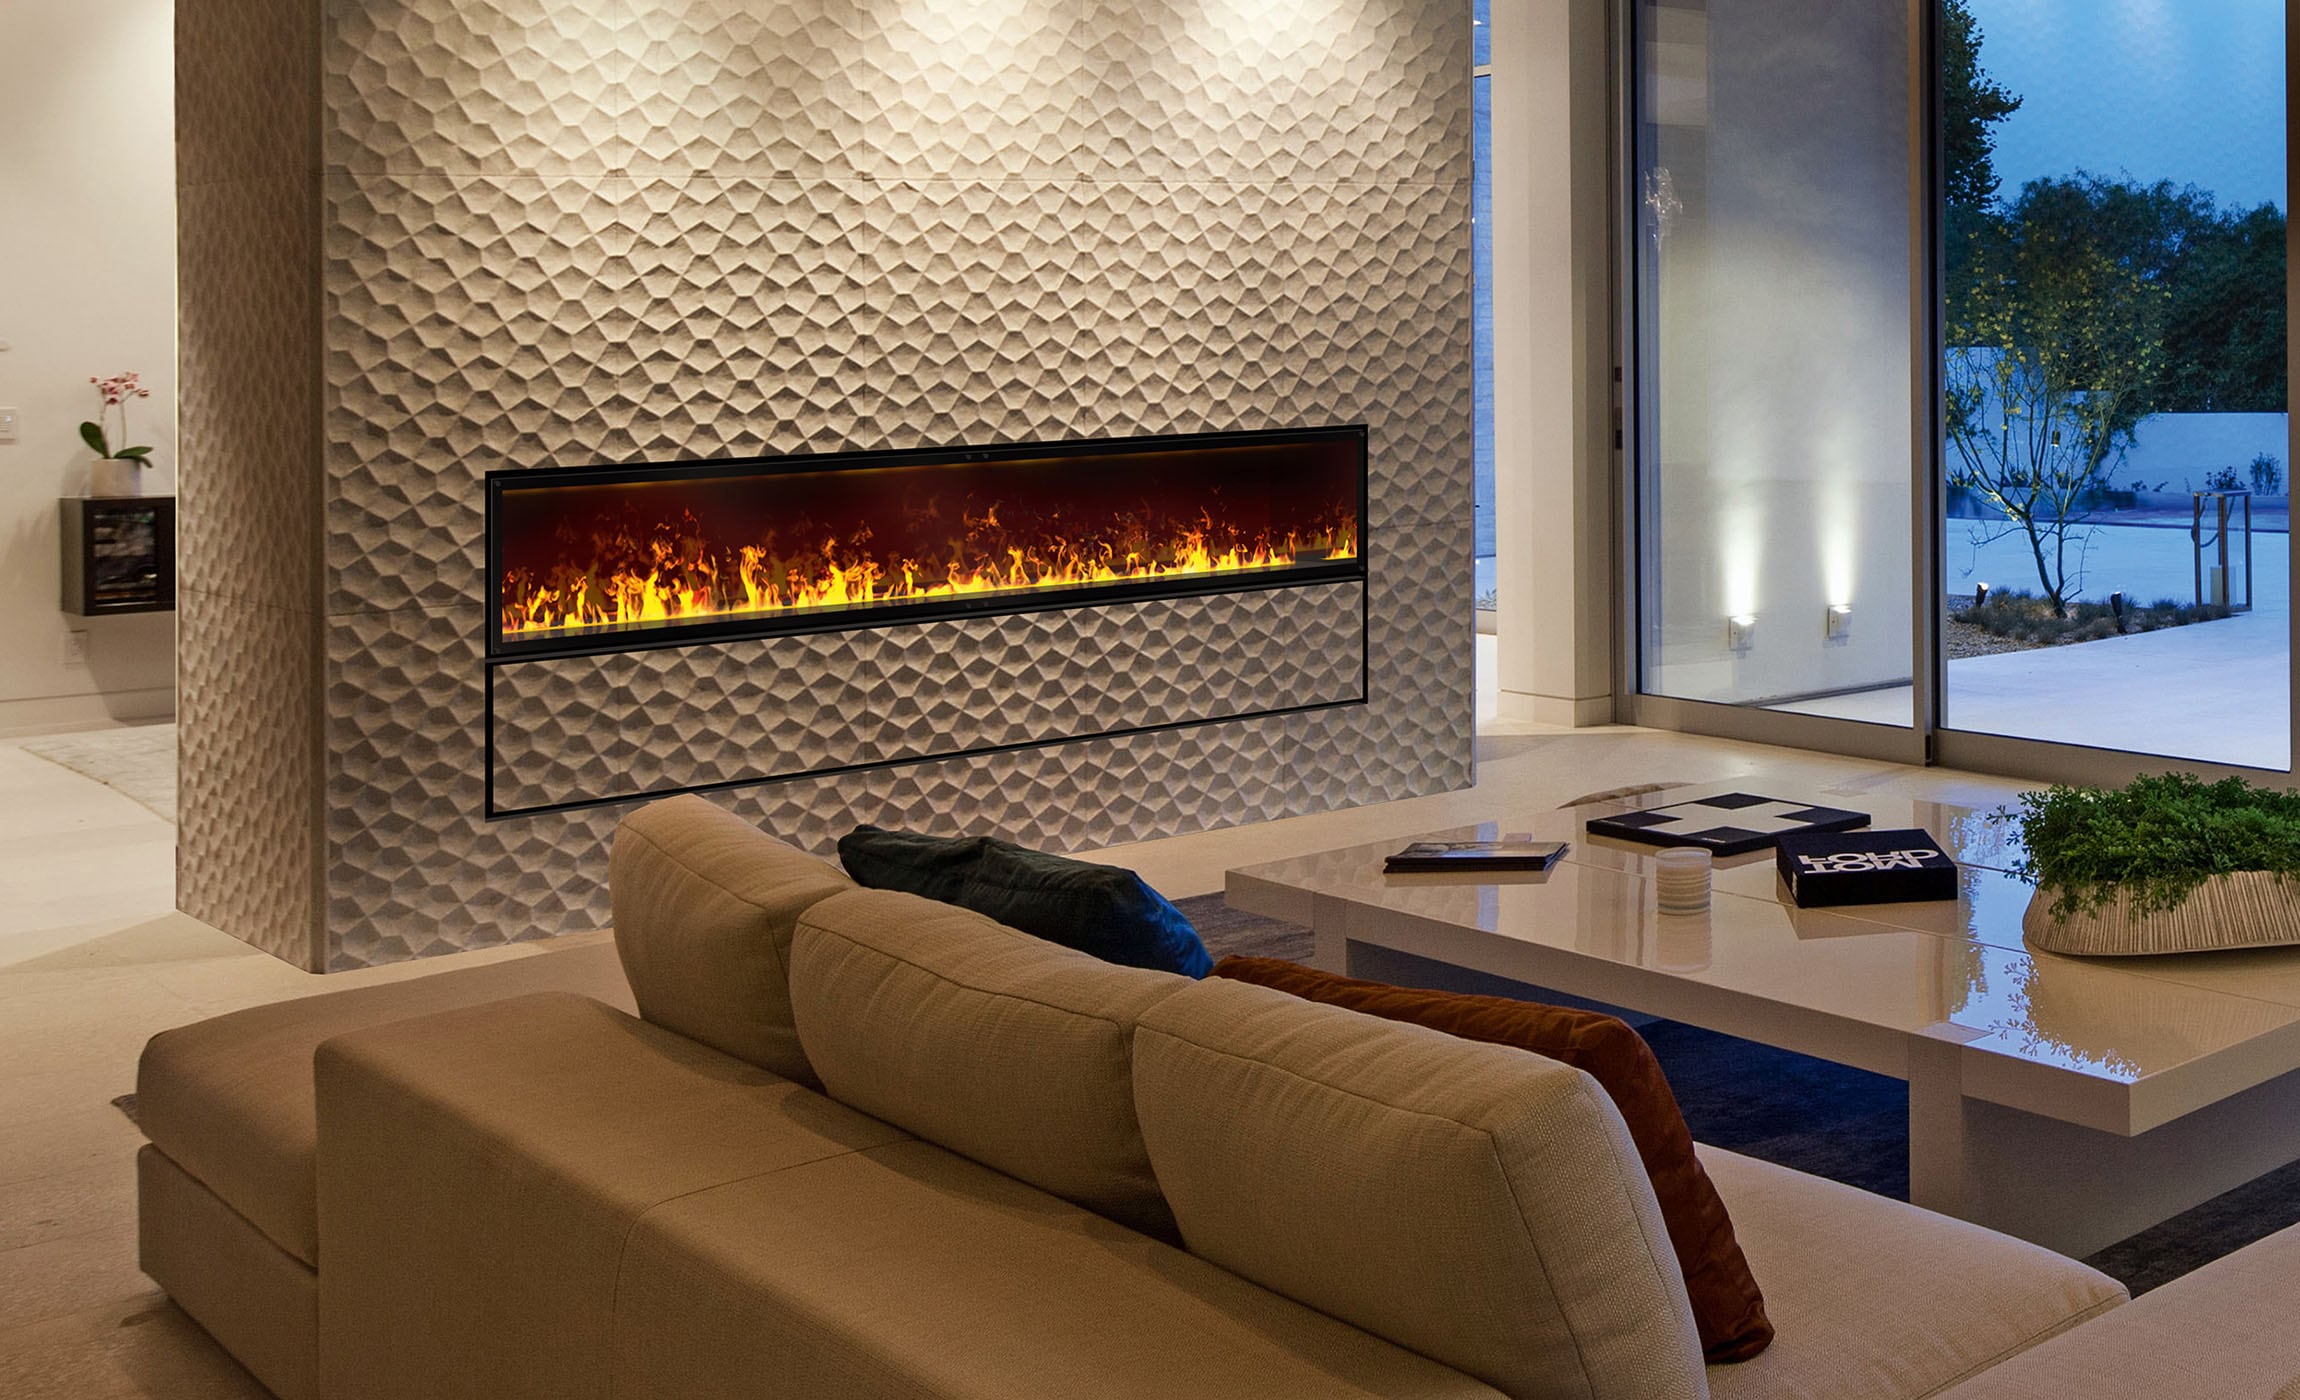 haas design.at-hotel-und-home-interior-onlineshop-tuev-geprueft-effektfeuerkamin-standgeraet-endless-fire-box